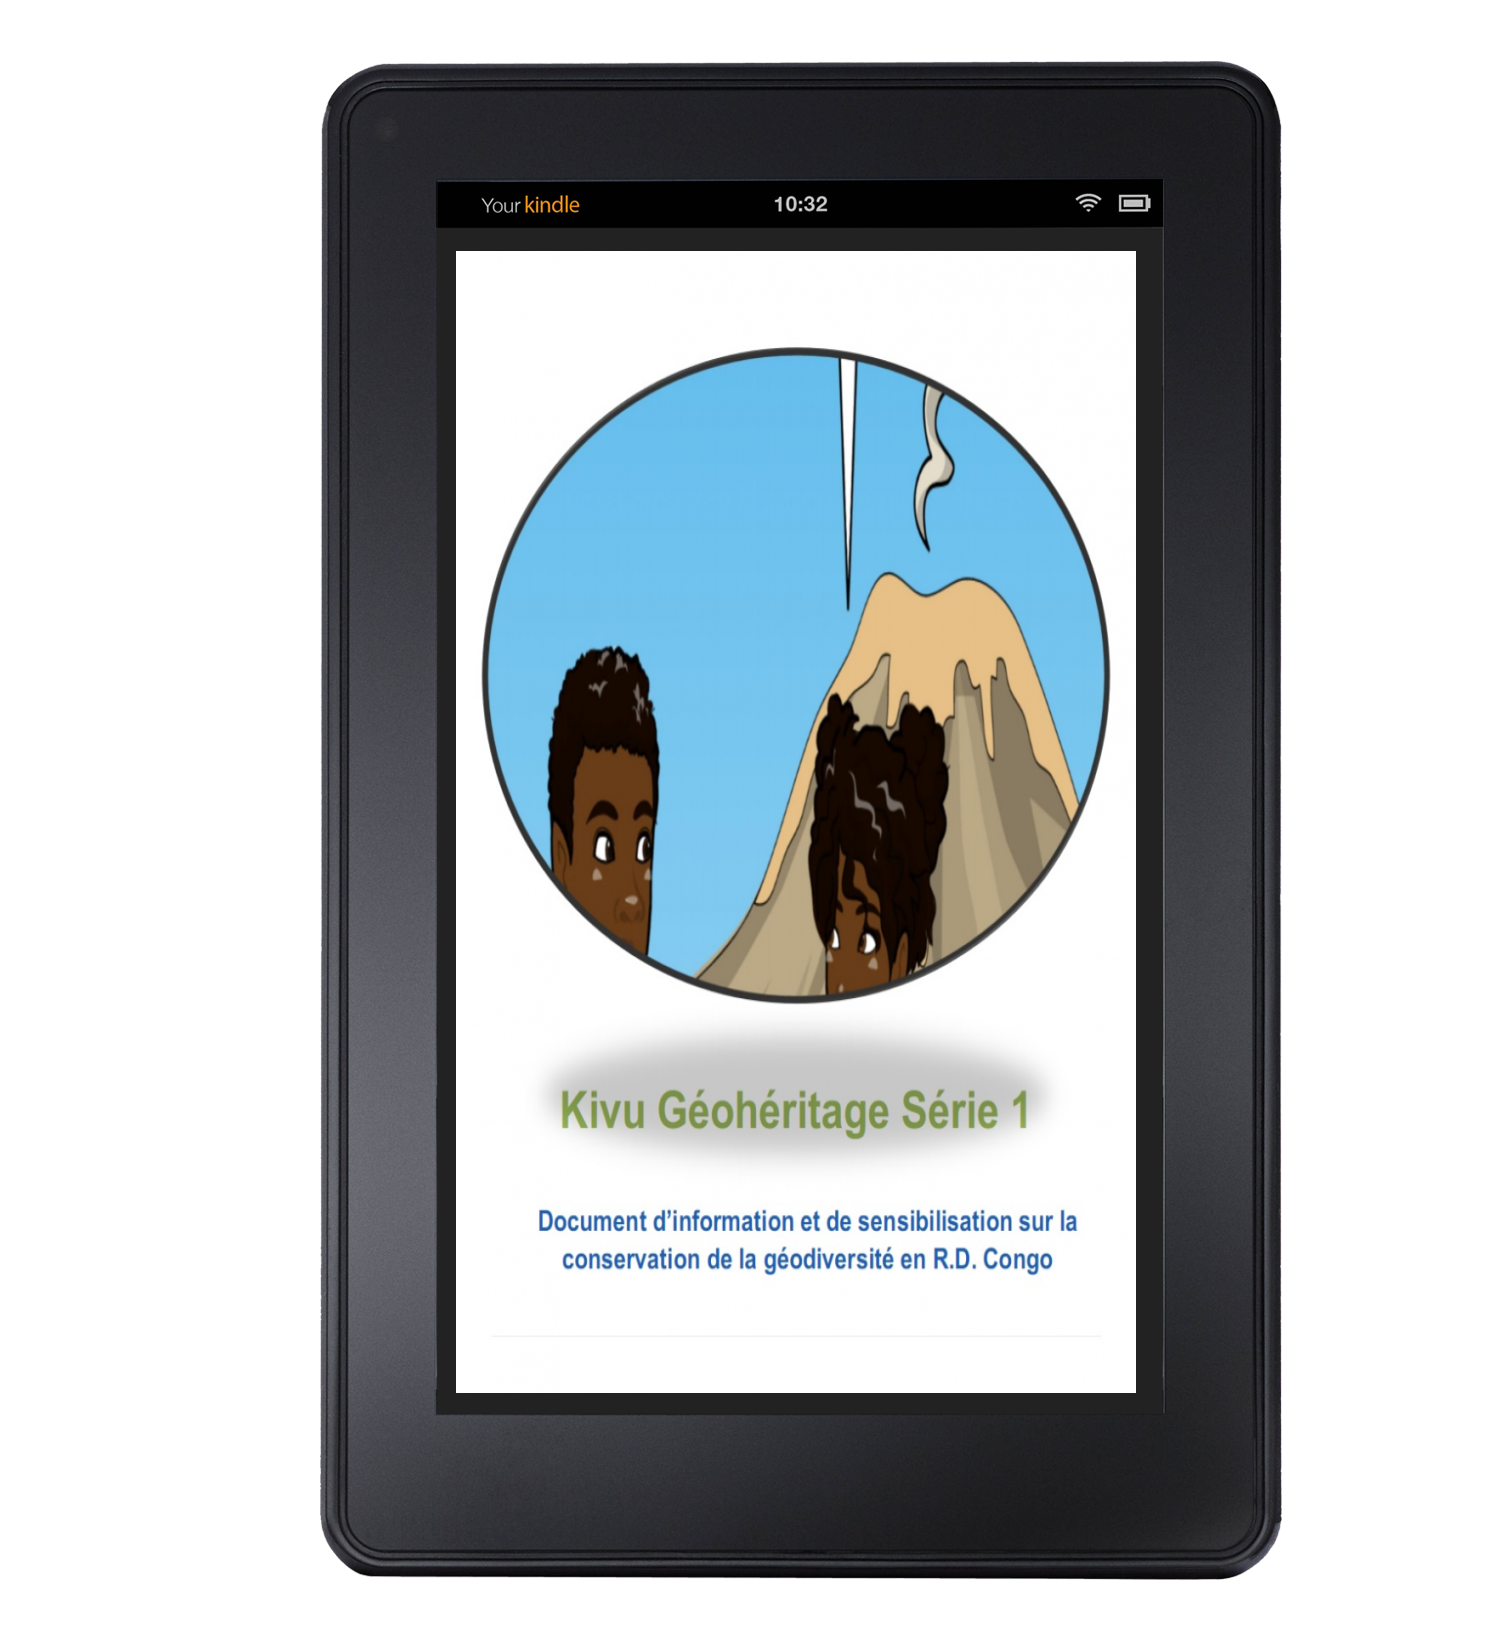 Kivu geoheritafe serie 1 ebook